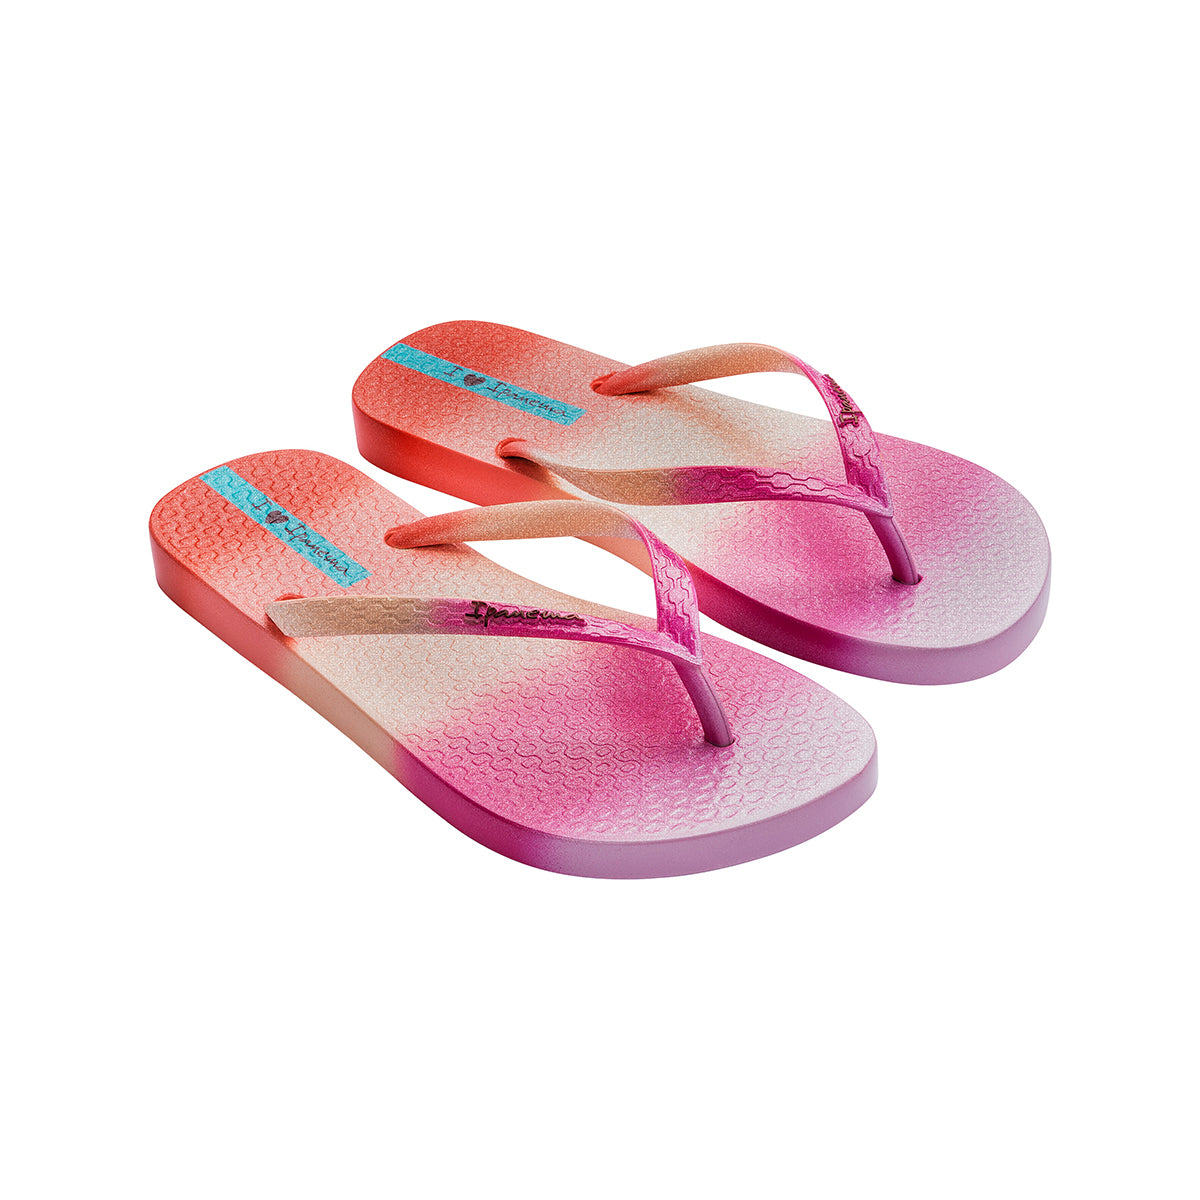 Ipanema Flip-Flops For Women, Assorted Colors